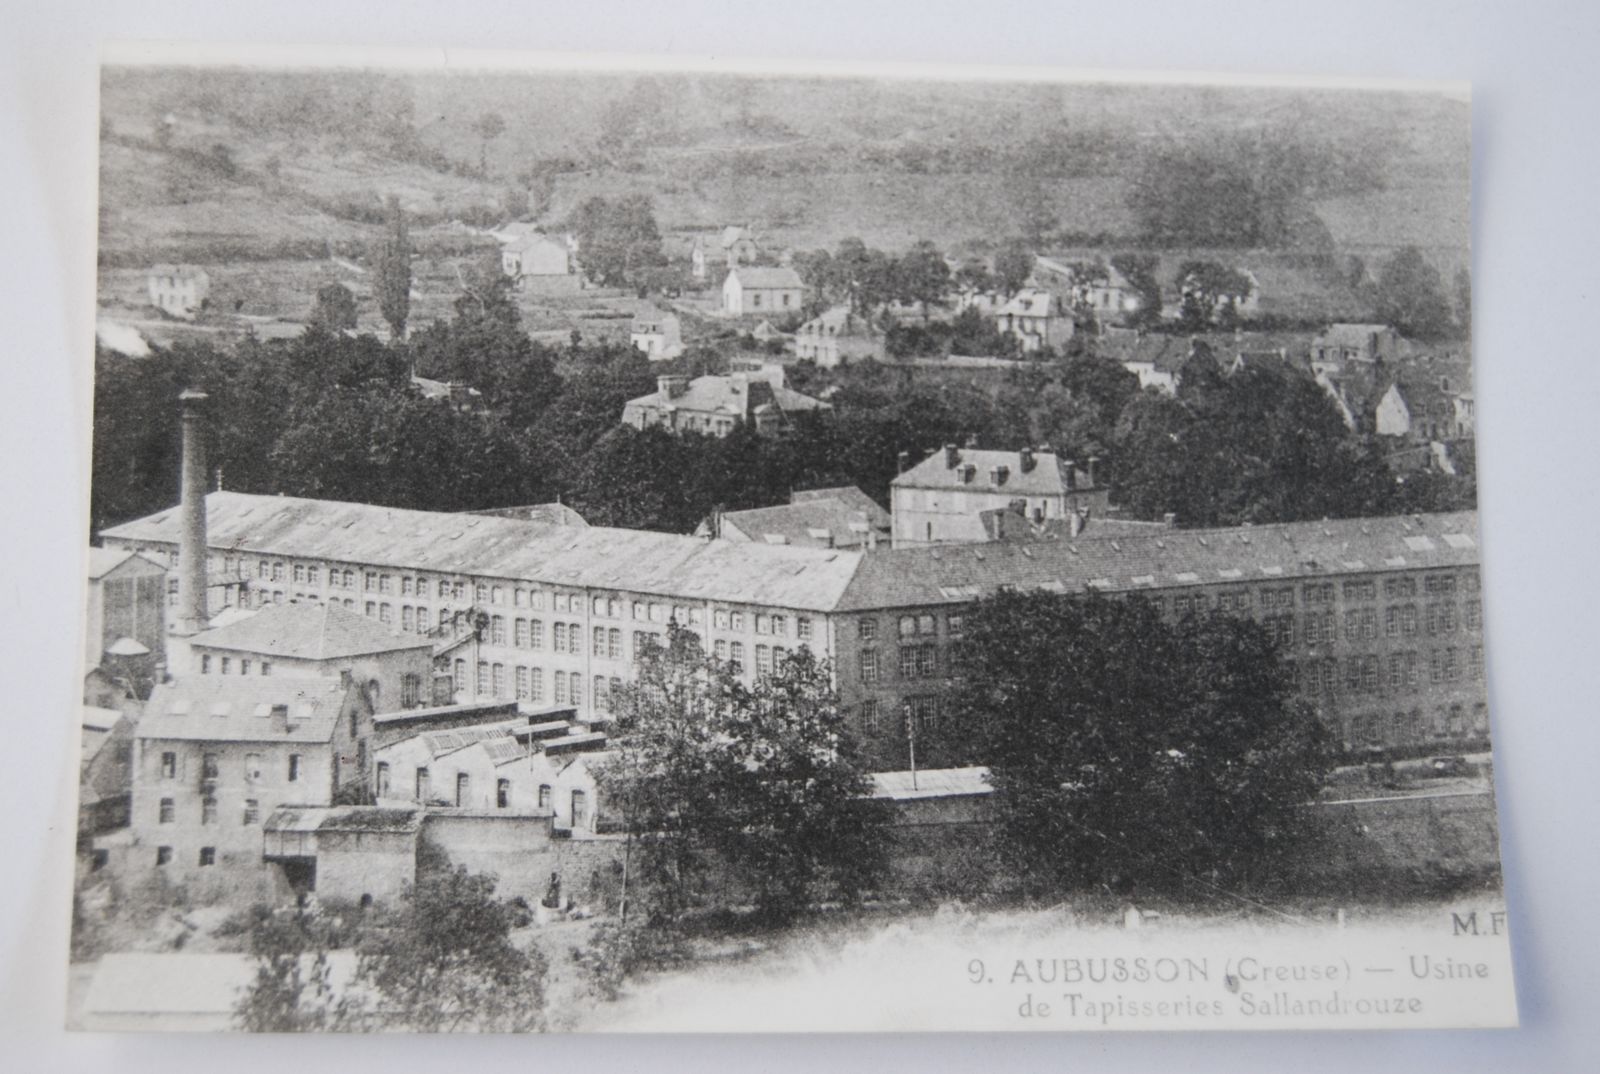 Carte postale de la manufacture Sallandrouze, au début du 20e siècle (AD 23), vue depuis l'autre côté de la Creuse, avec ses deux ailes symétriques rythmées par des baies cintrées